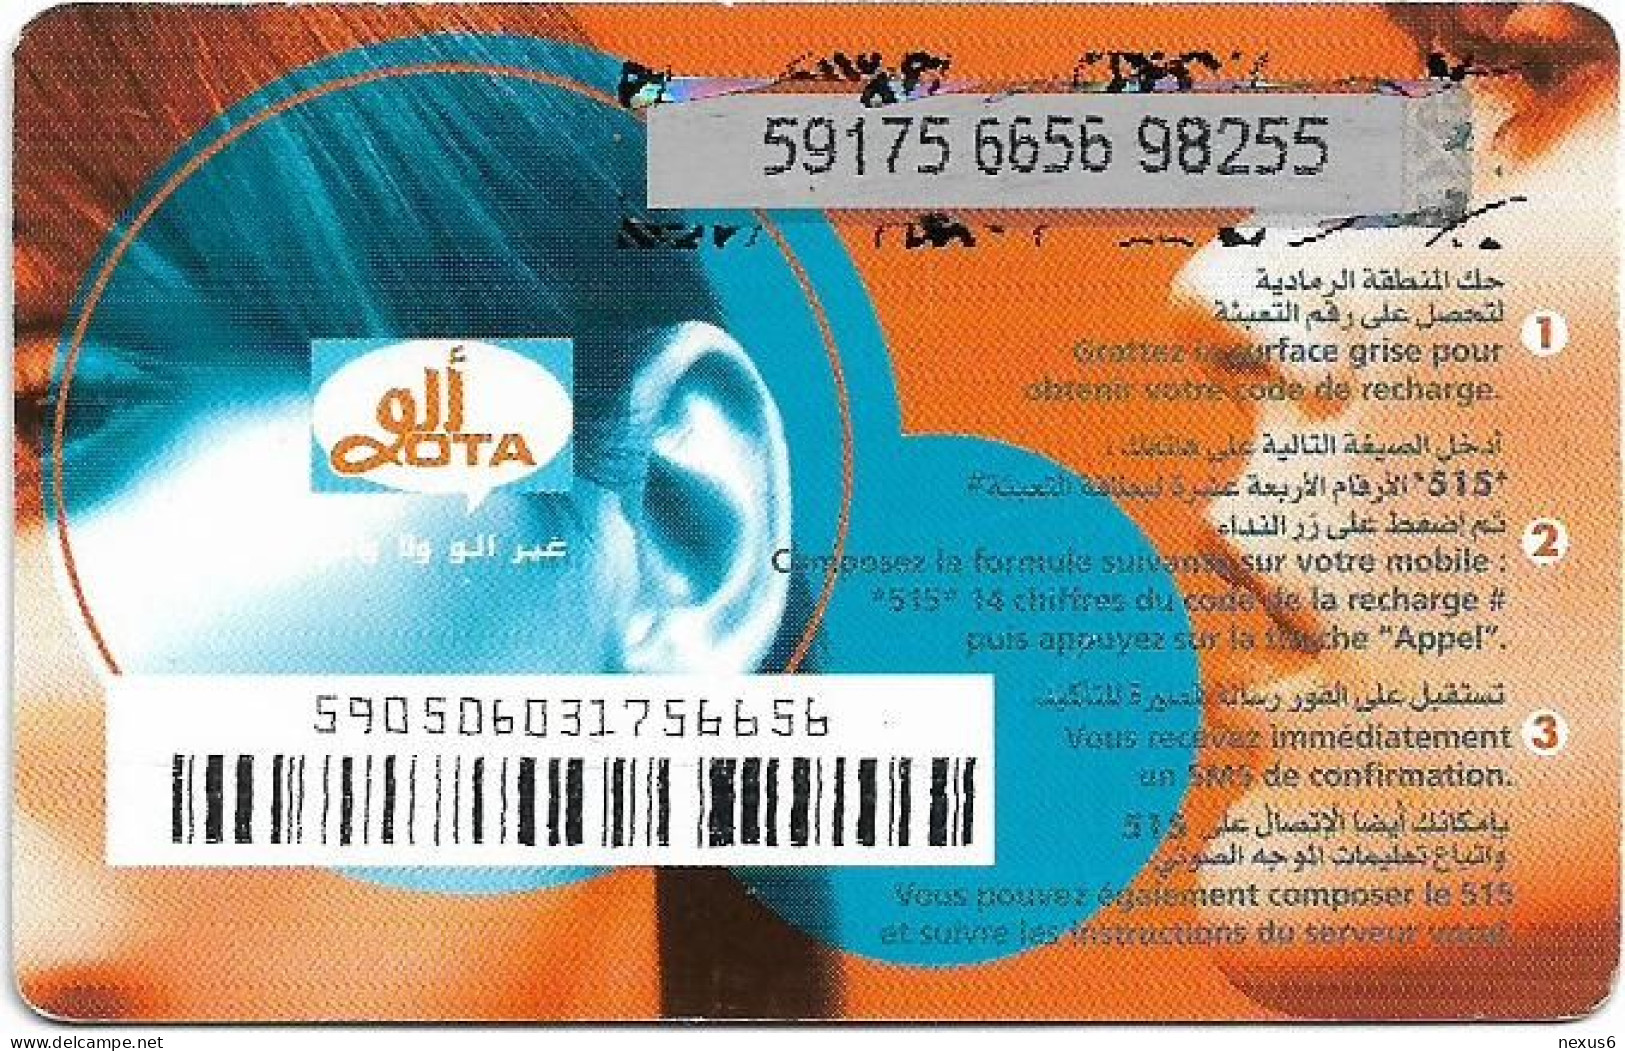 Algeria - Allo OTA - Allo OTA Blue 2 (Grey PIN Background), GSM Refill 500DA, Used - Algérie